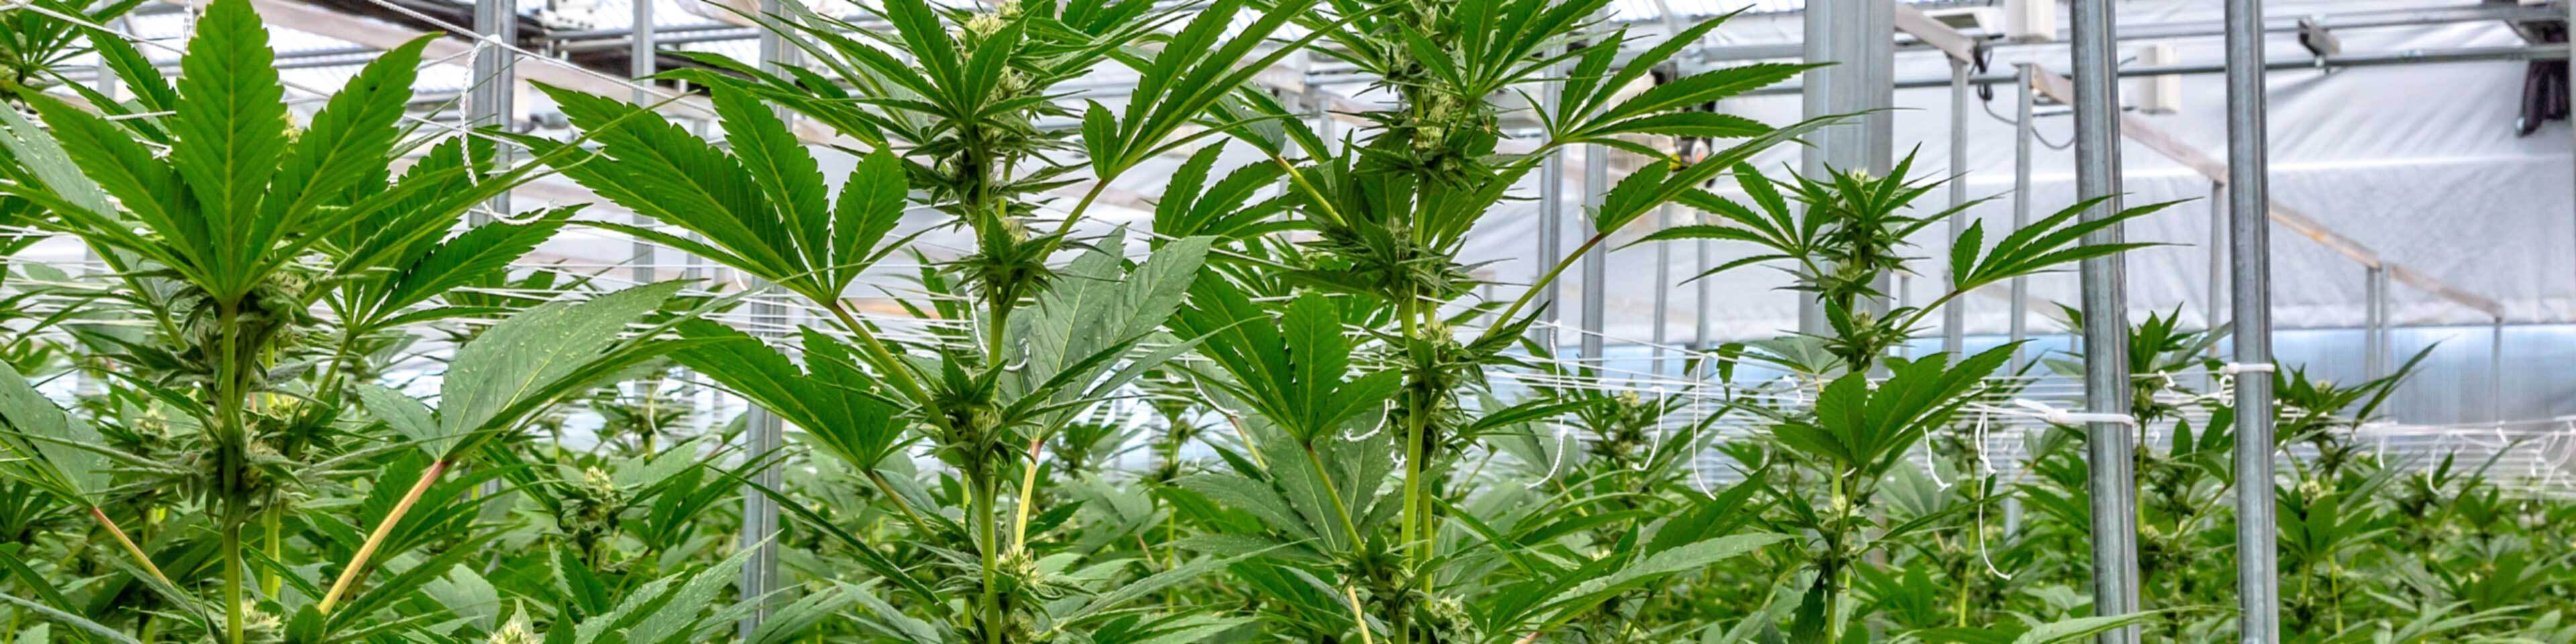 A marijuana cultivation farm requires the proper licenses